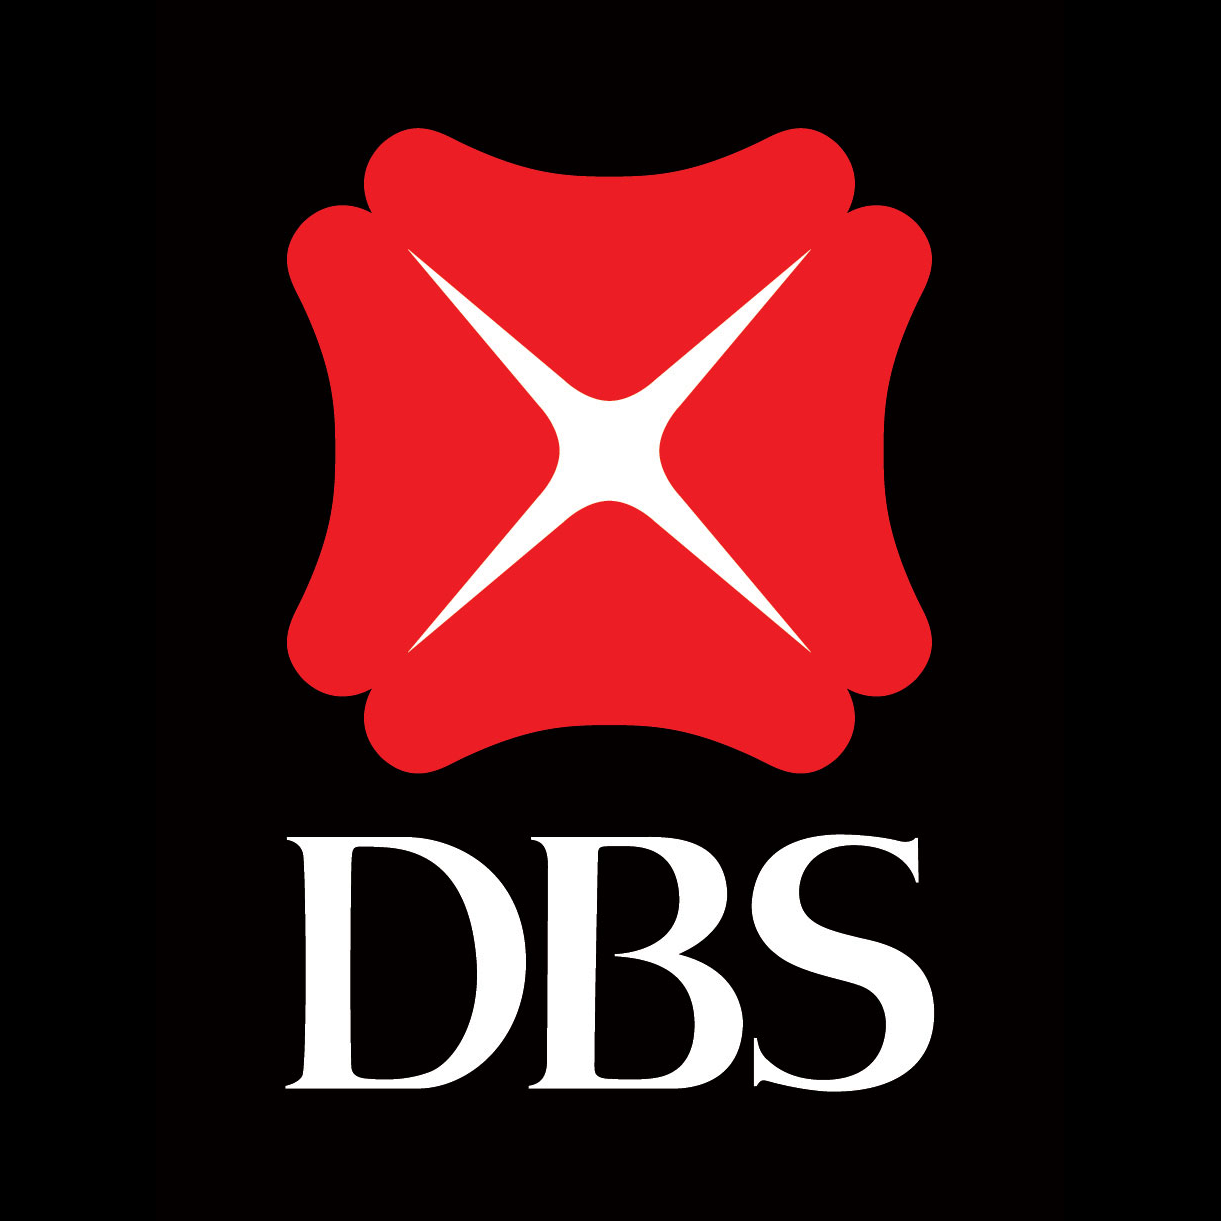 cbs logo vector